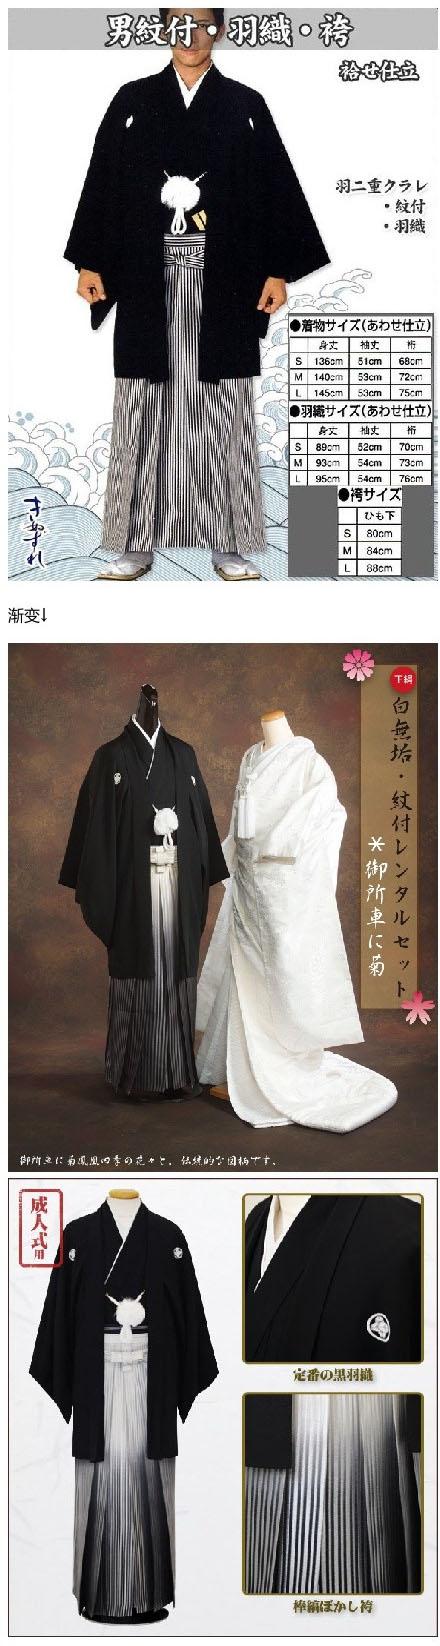 请介绍一下日本男士和服的种类？